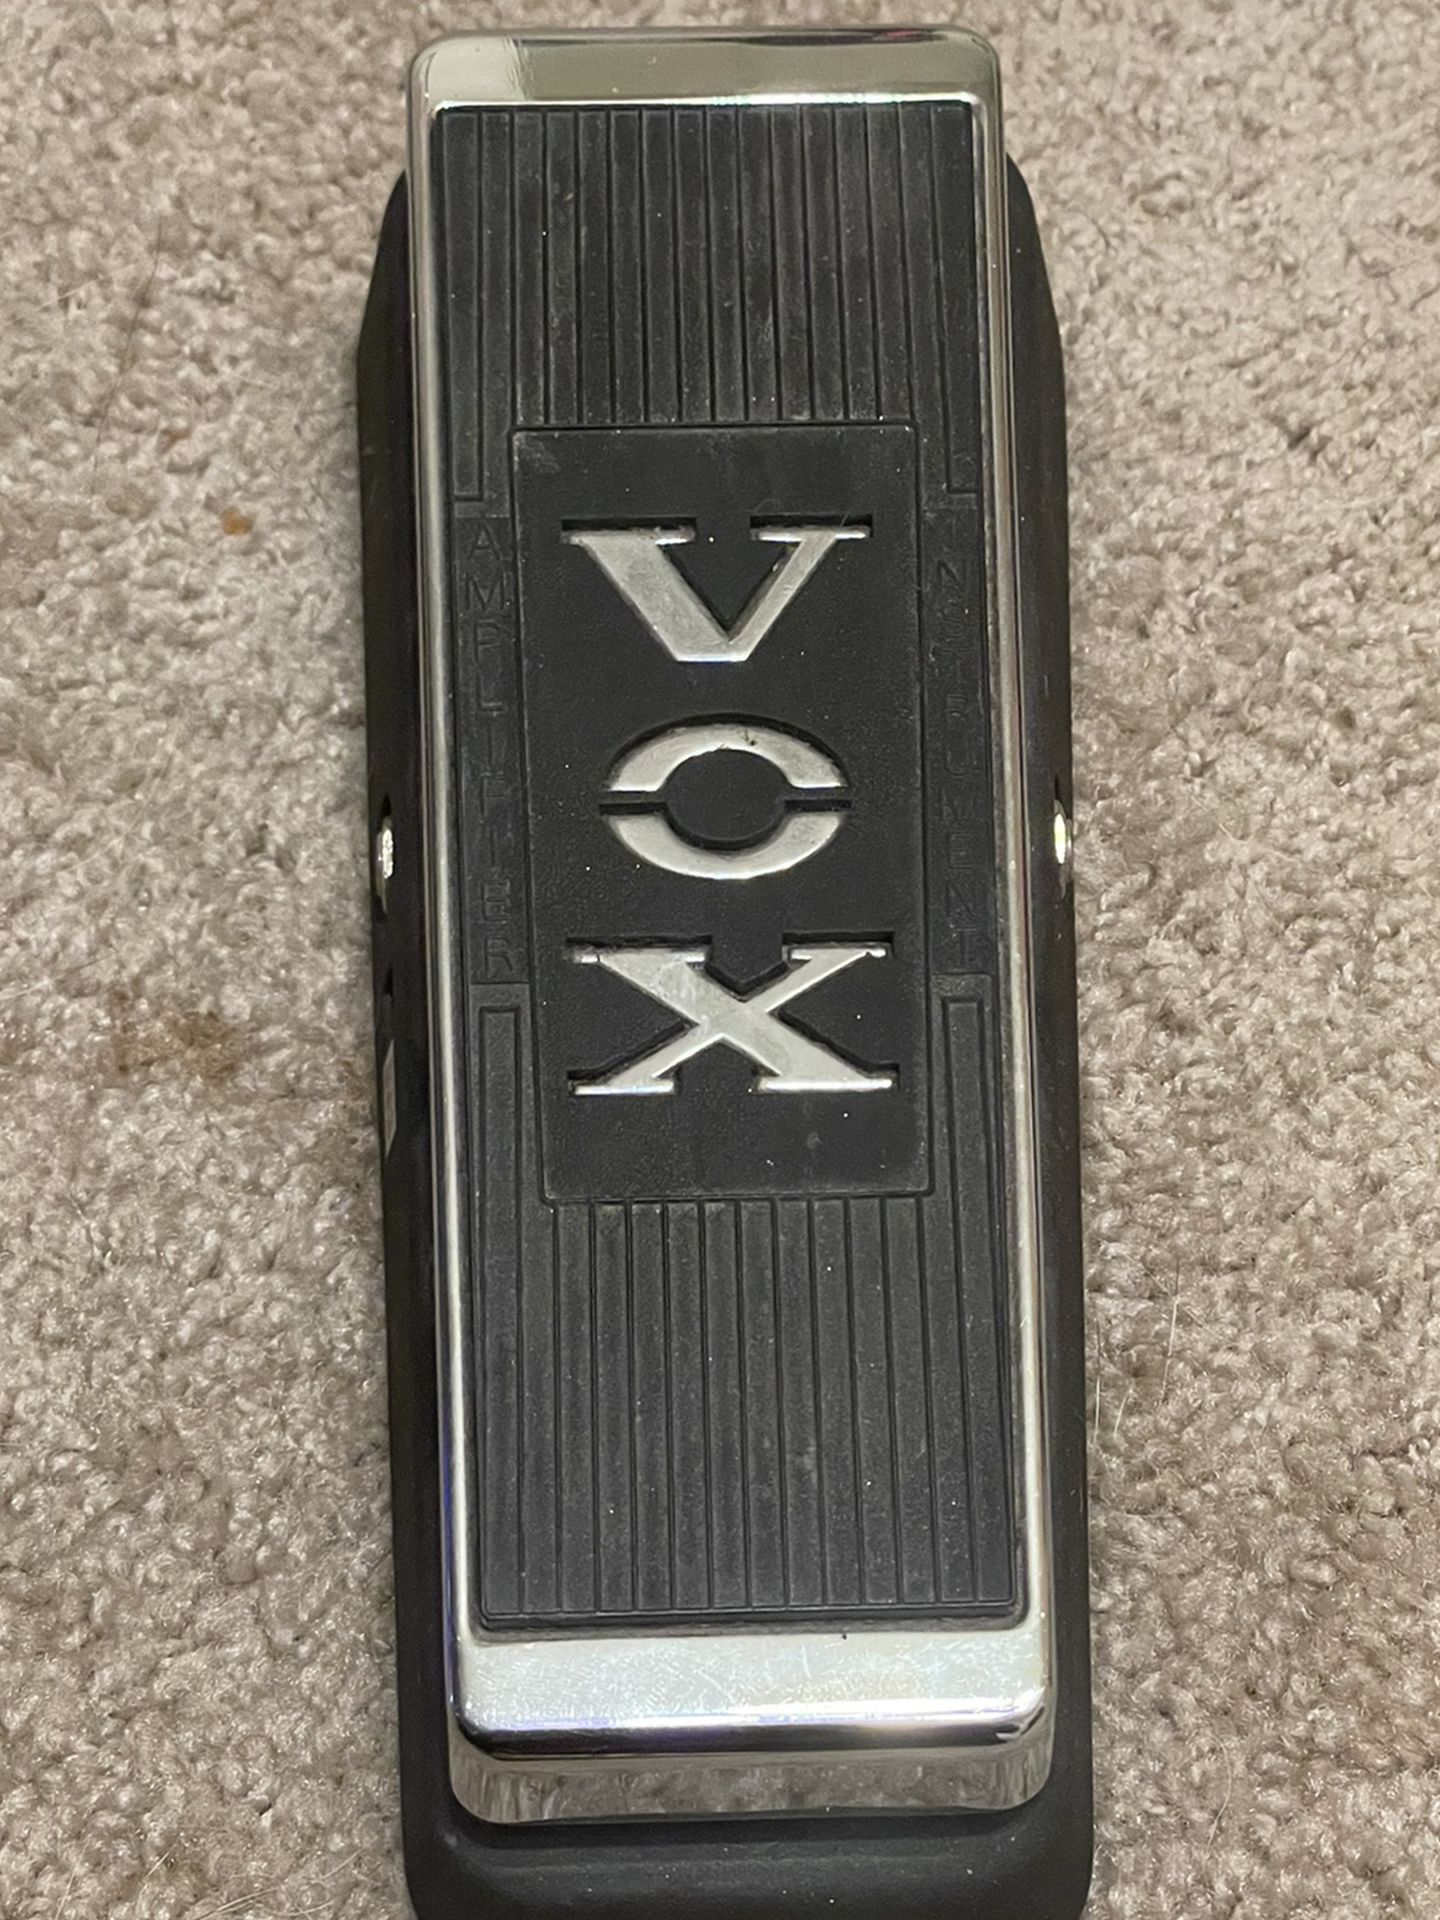 Vox Wah Wah pedal